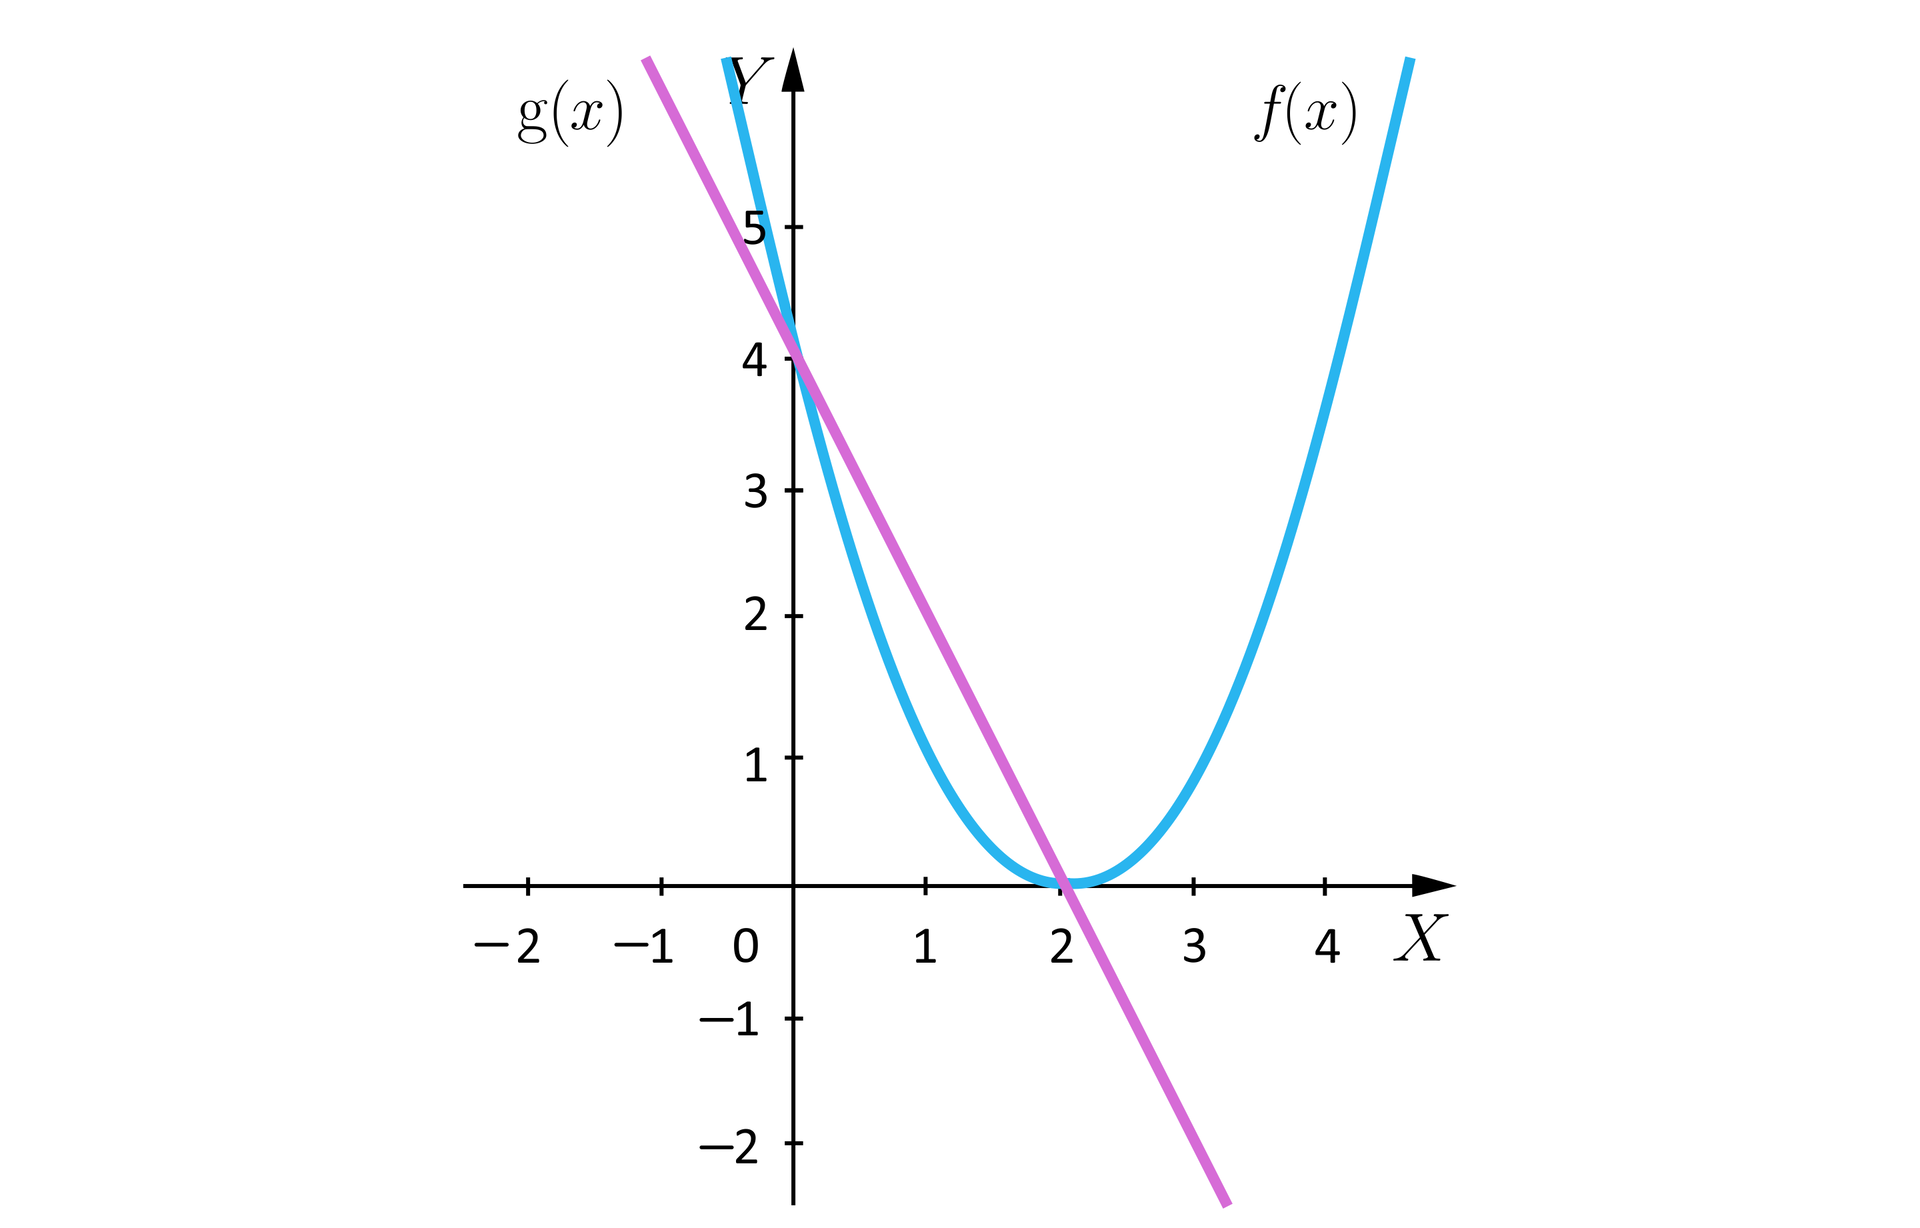 Ilustracja przedstawia układ współrzędnych z poziomą osią X od minus dwóch do czterech i pionową osią Y od minus dwóch do pięciu. Na płaszczyźnie narysowana jest parabola będąca wykresem funkcji f oraz ukośna prosta będąca wykresem funkcji g. Parabola ma ramiona skierowane do góry, wierzchołek w punkcie 2;0 oraz przecina oś Y w punkcie 0;4. Prosta przecina oś Y w punkcie o współrzędnych 0;4 oraz oś X w punkcie 2;0.